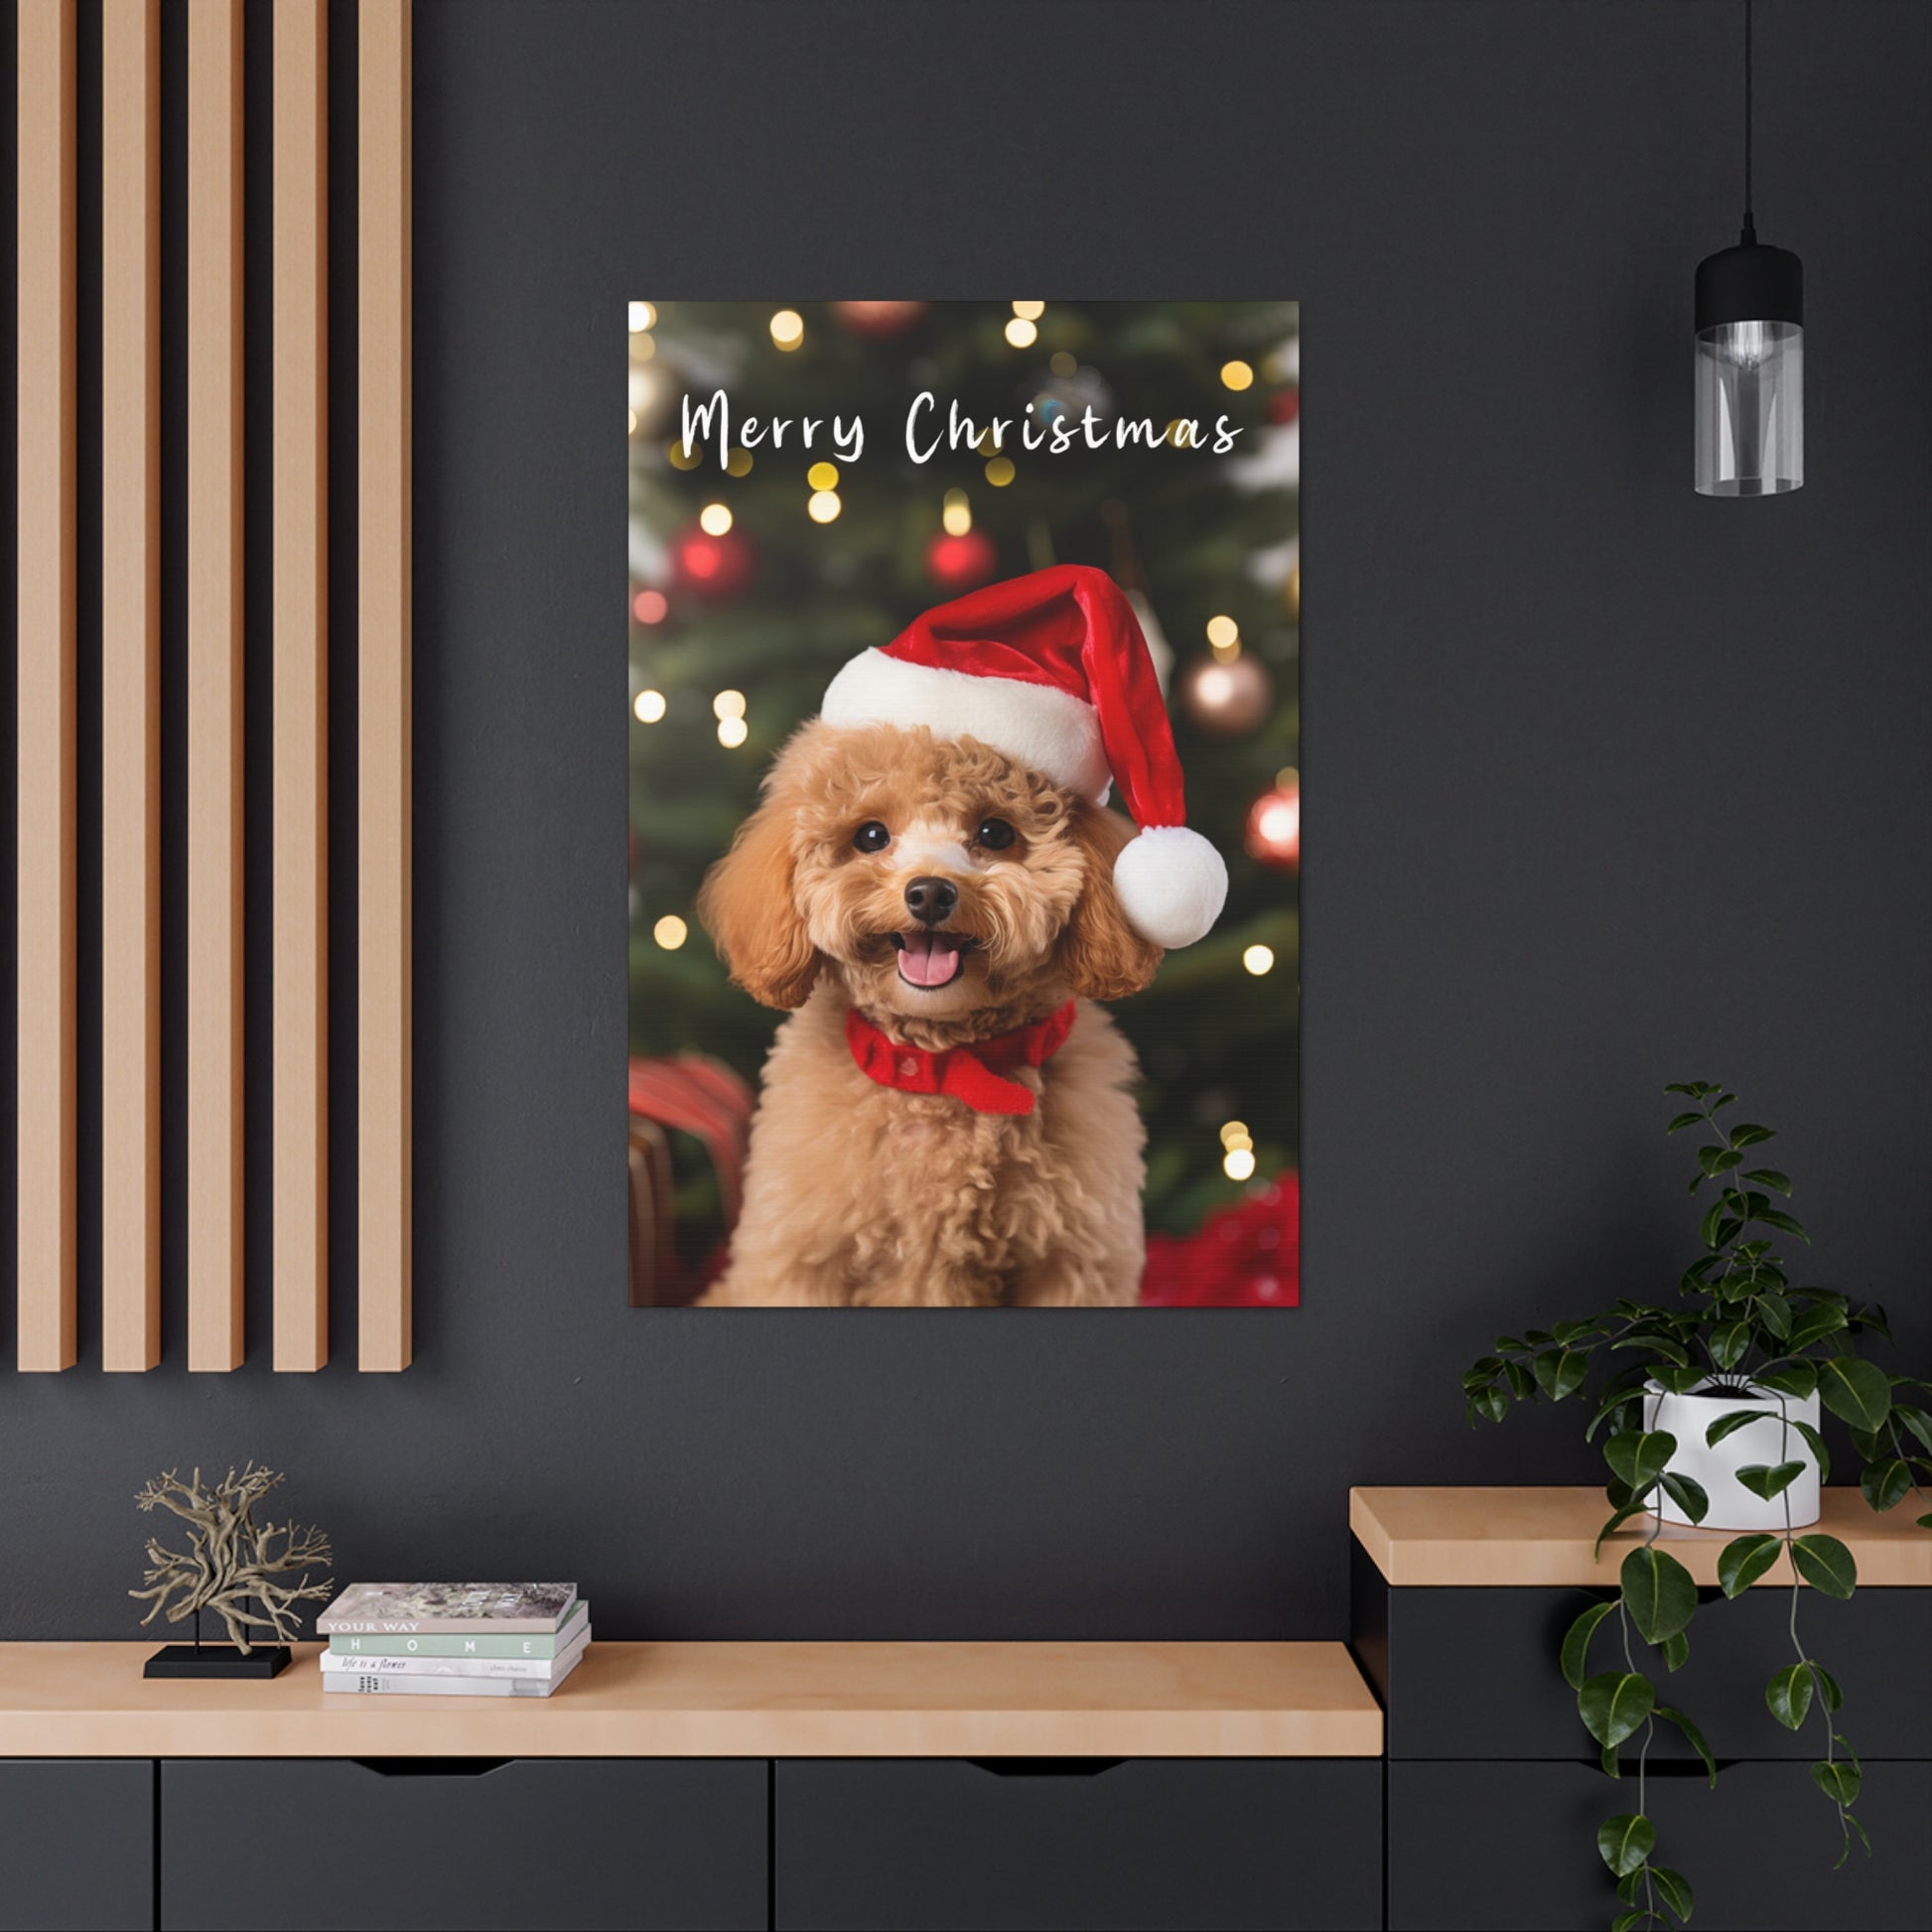 Christmas Poodles wall decor